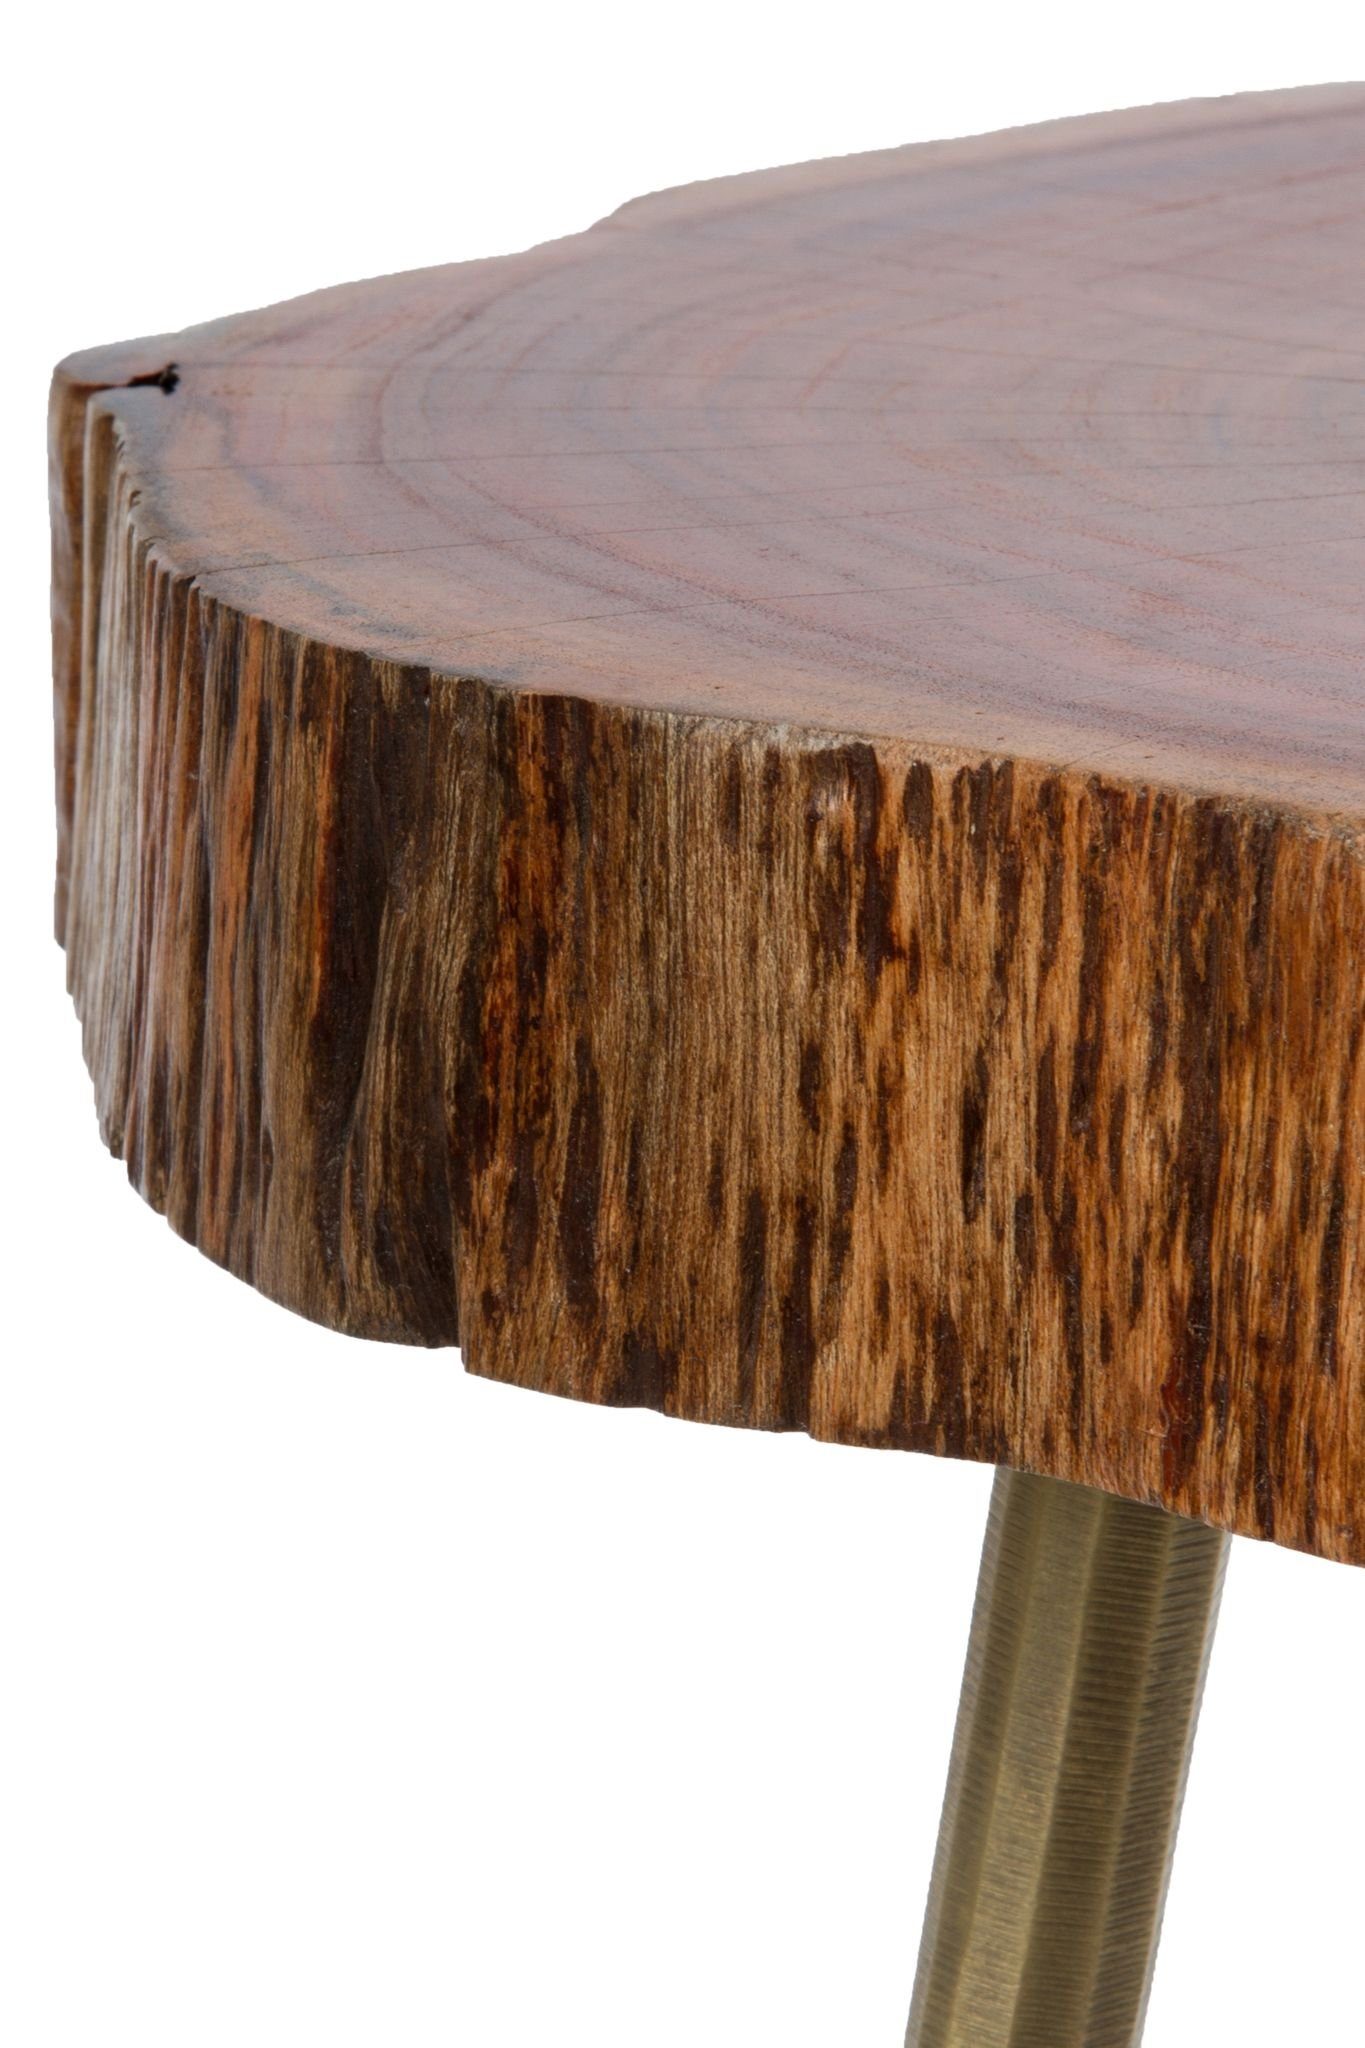 Holz Couchtisch Ablage: elbmöbel mit rustikal Messingfüllung messing cm 28x46x36 Beistelltisch Beistelltisch (FALSCH),